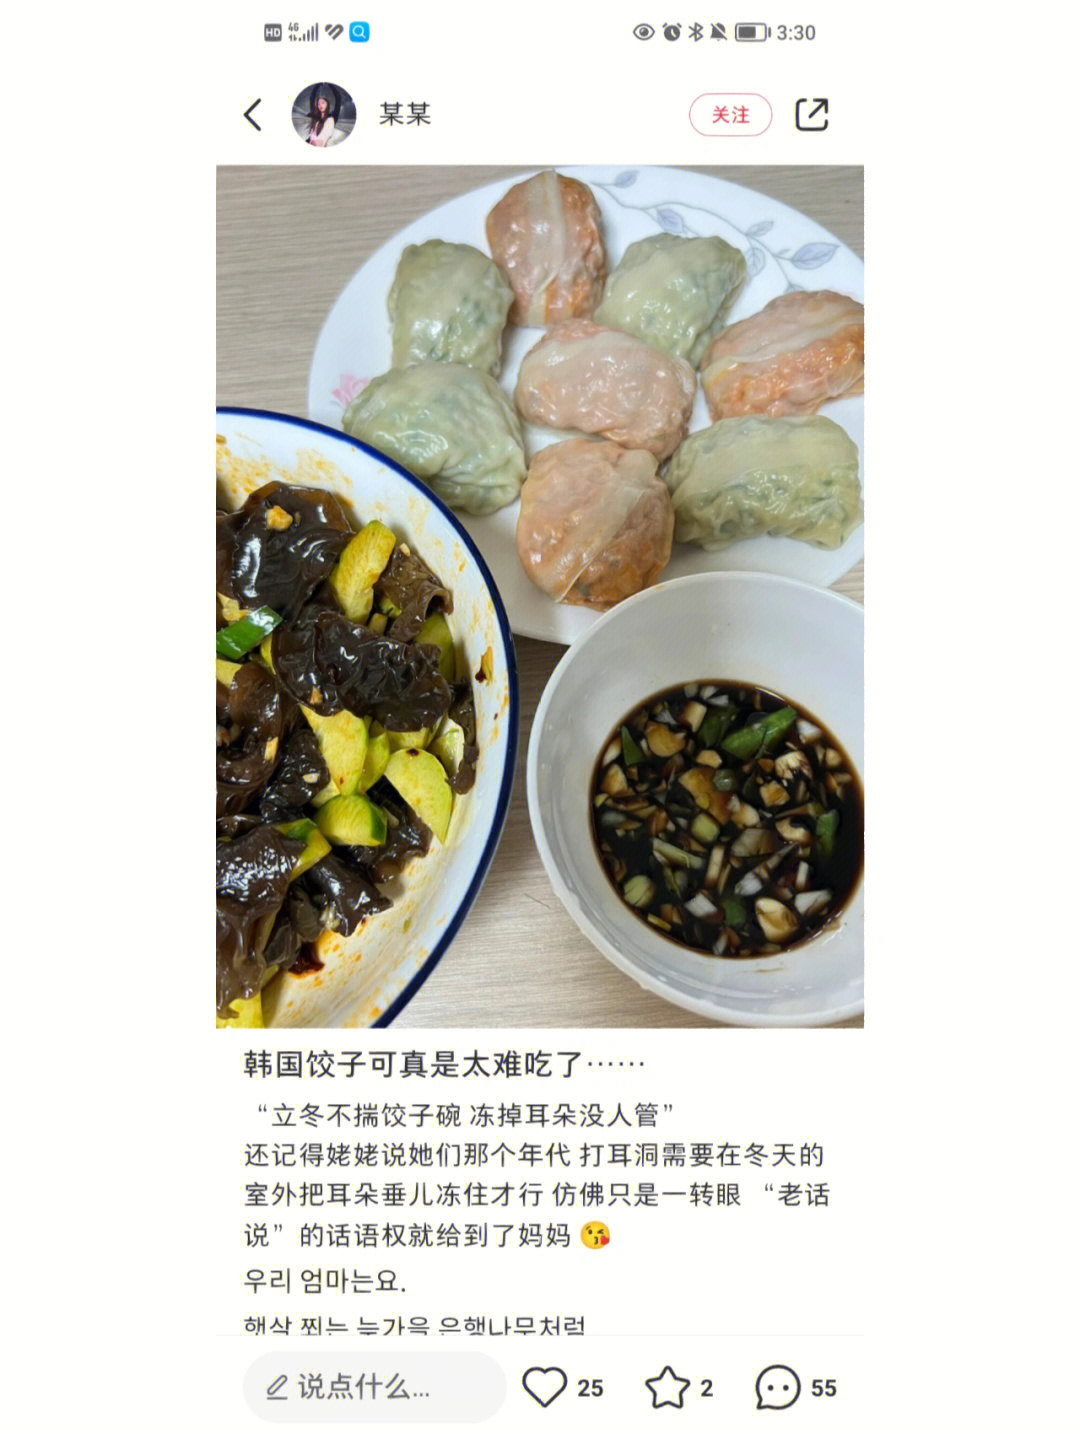 倒是韩国偷中国饺子改名叫mandu的,遭到了日本网友耻笑,文化挪用不可